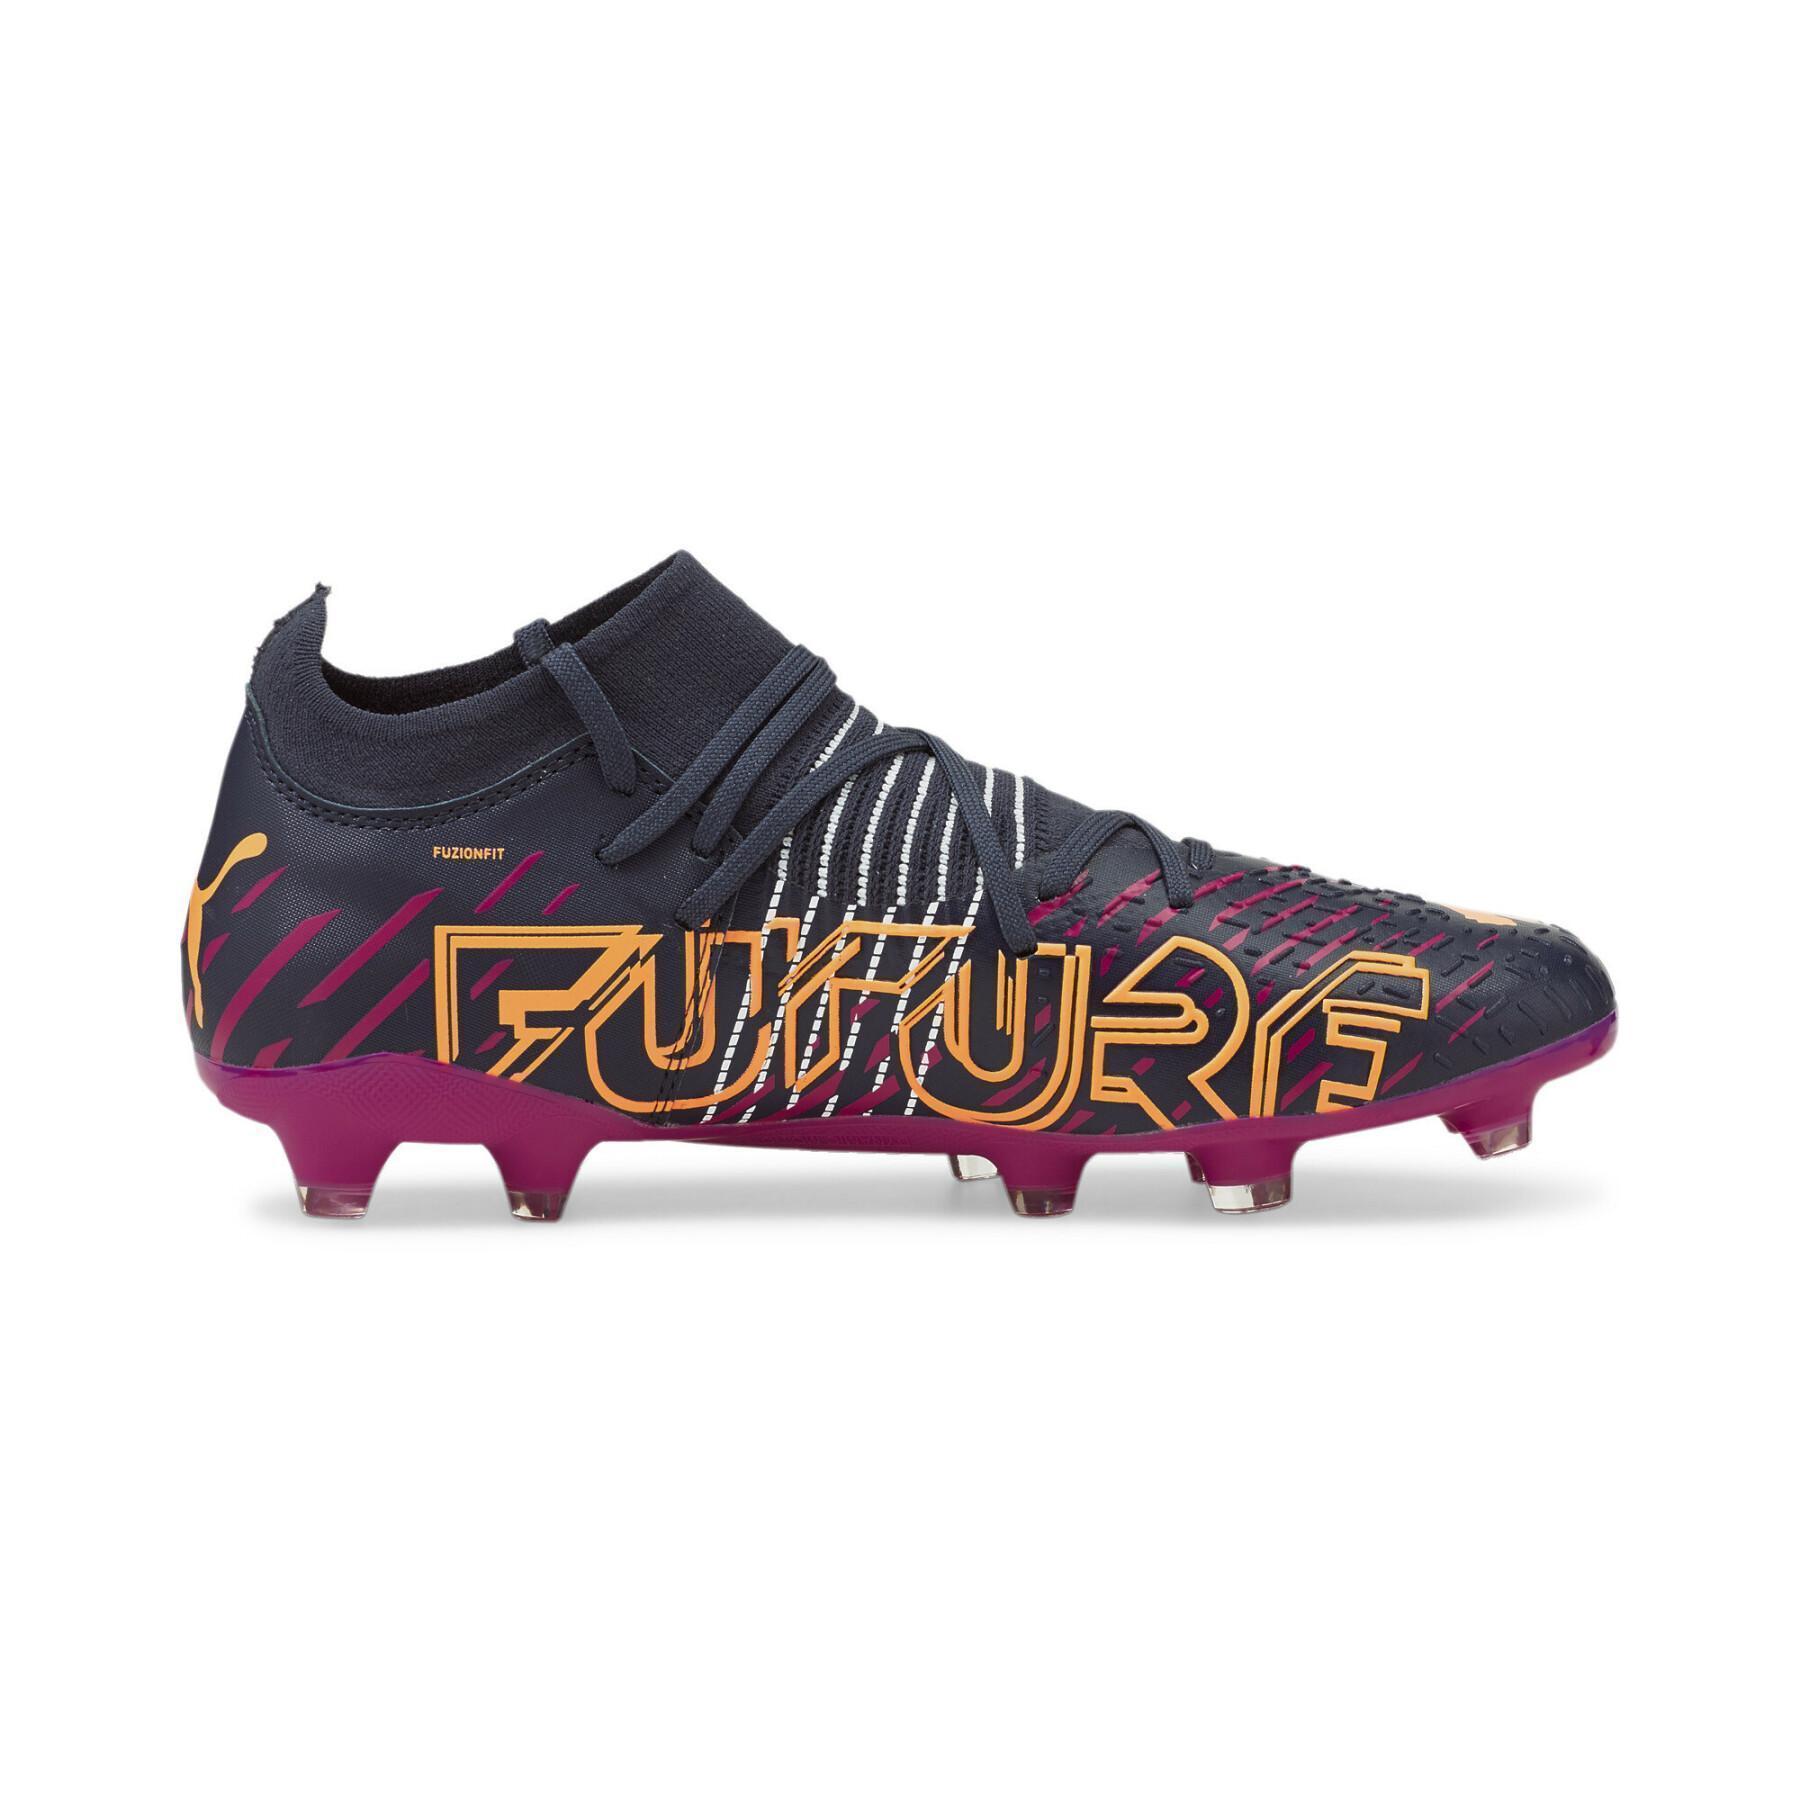 Soccer shoes Puma FUTURE Z 3.2 FG/AG